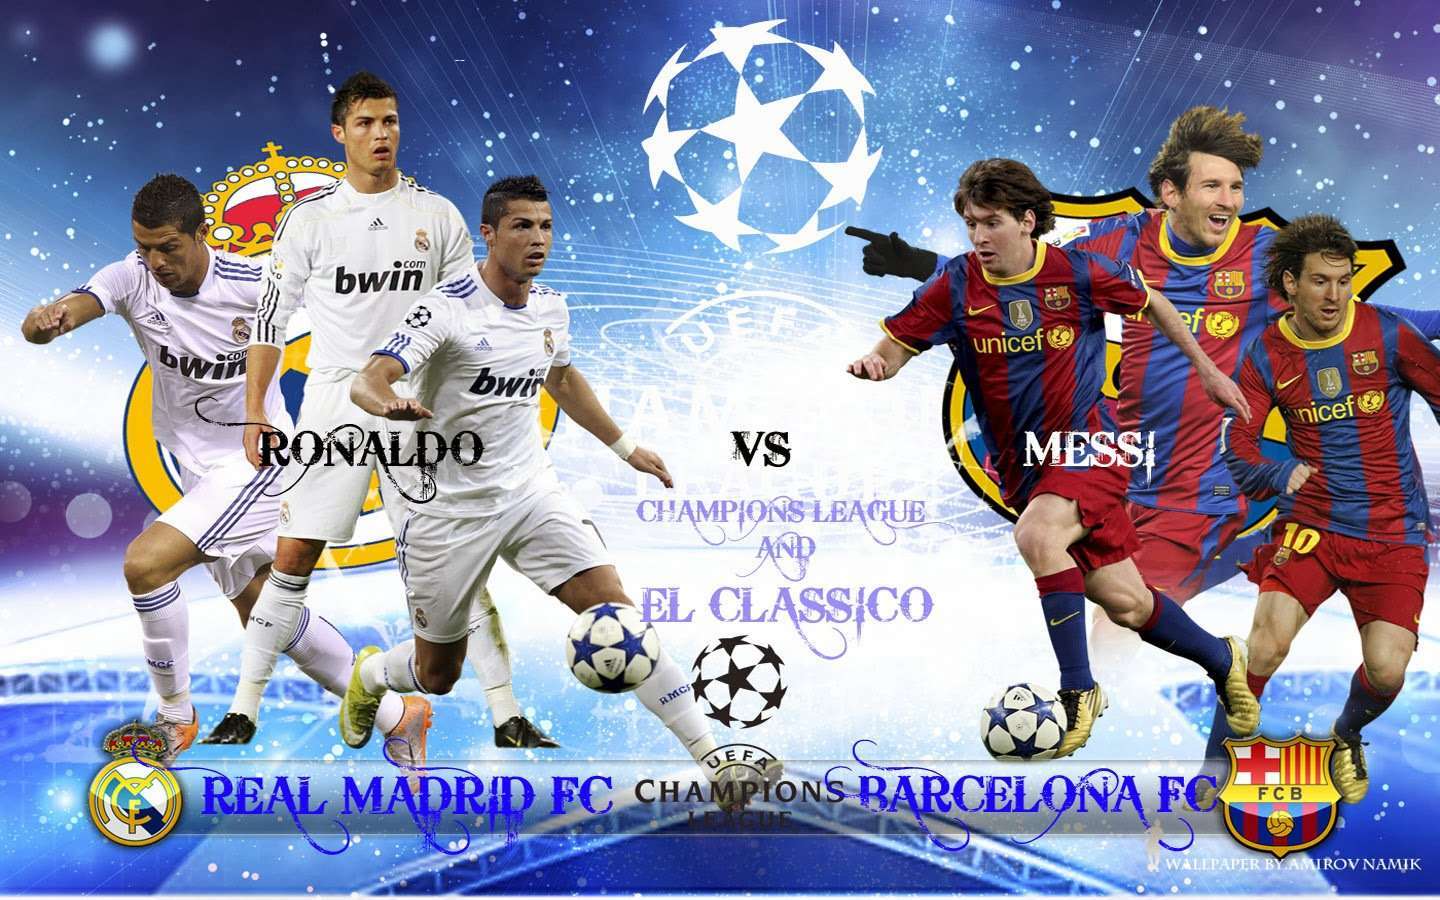 Cristiano Ronaldo Vs Lionel Messi 2016 Wallpapers Wallpaper Cave